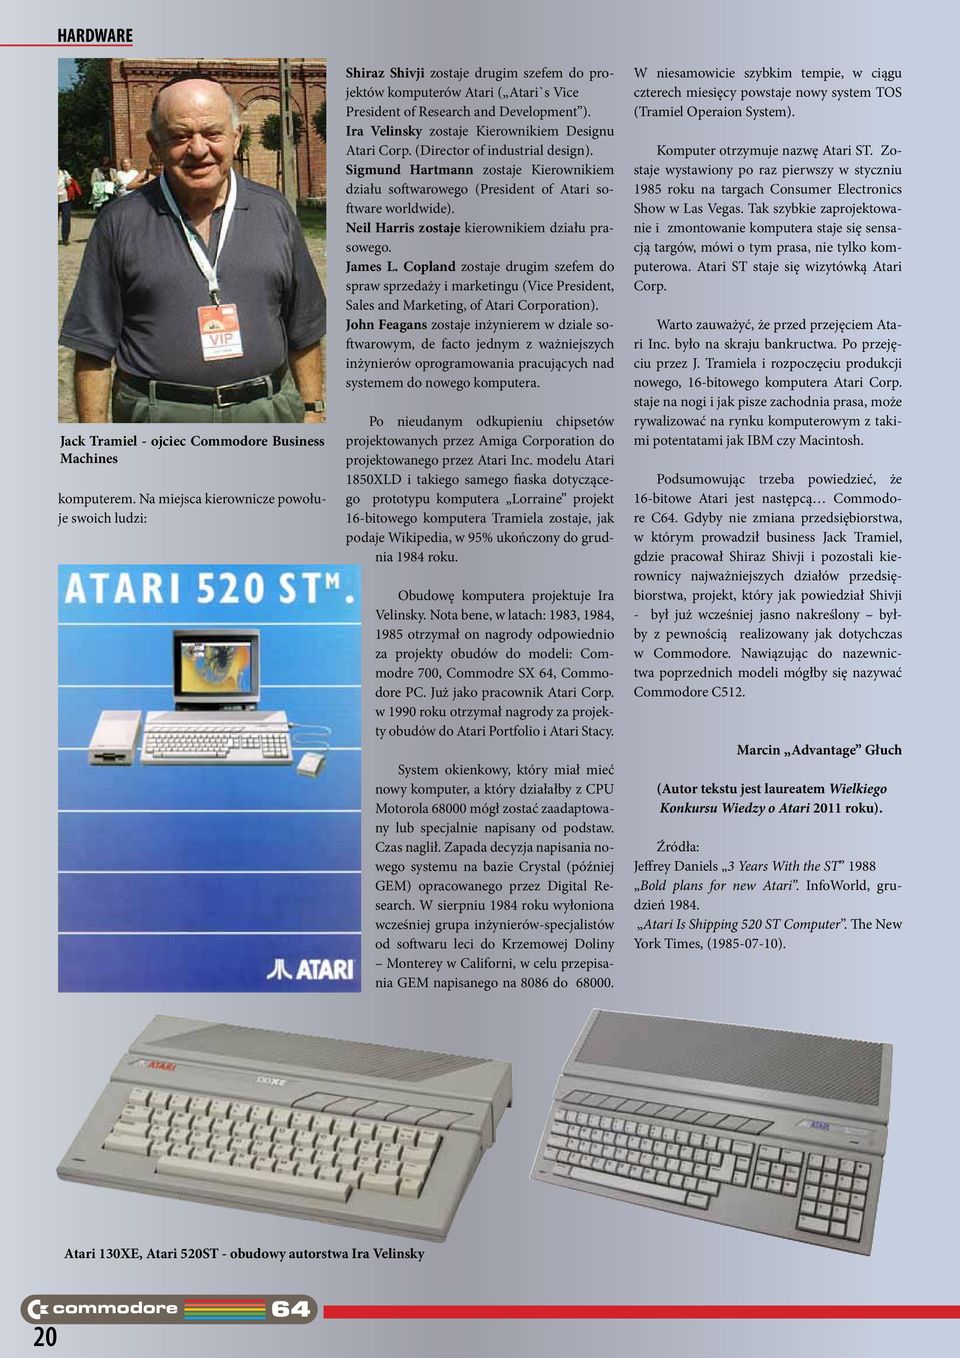 Ira Velinsky zostaje Kierownikiem Designu Atari Corp. (Director of industrial design). Sigmund Hartmann zostaje Kierownikiem działu softwarowego (President of Atari software worldwide).